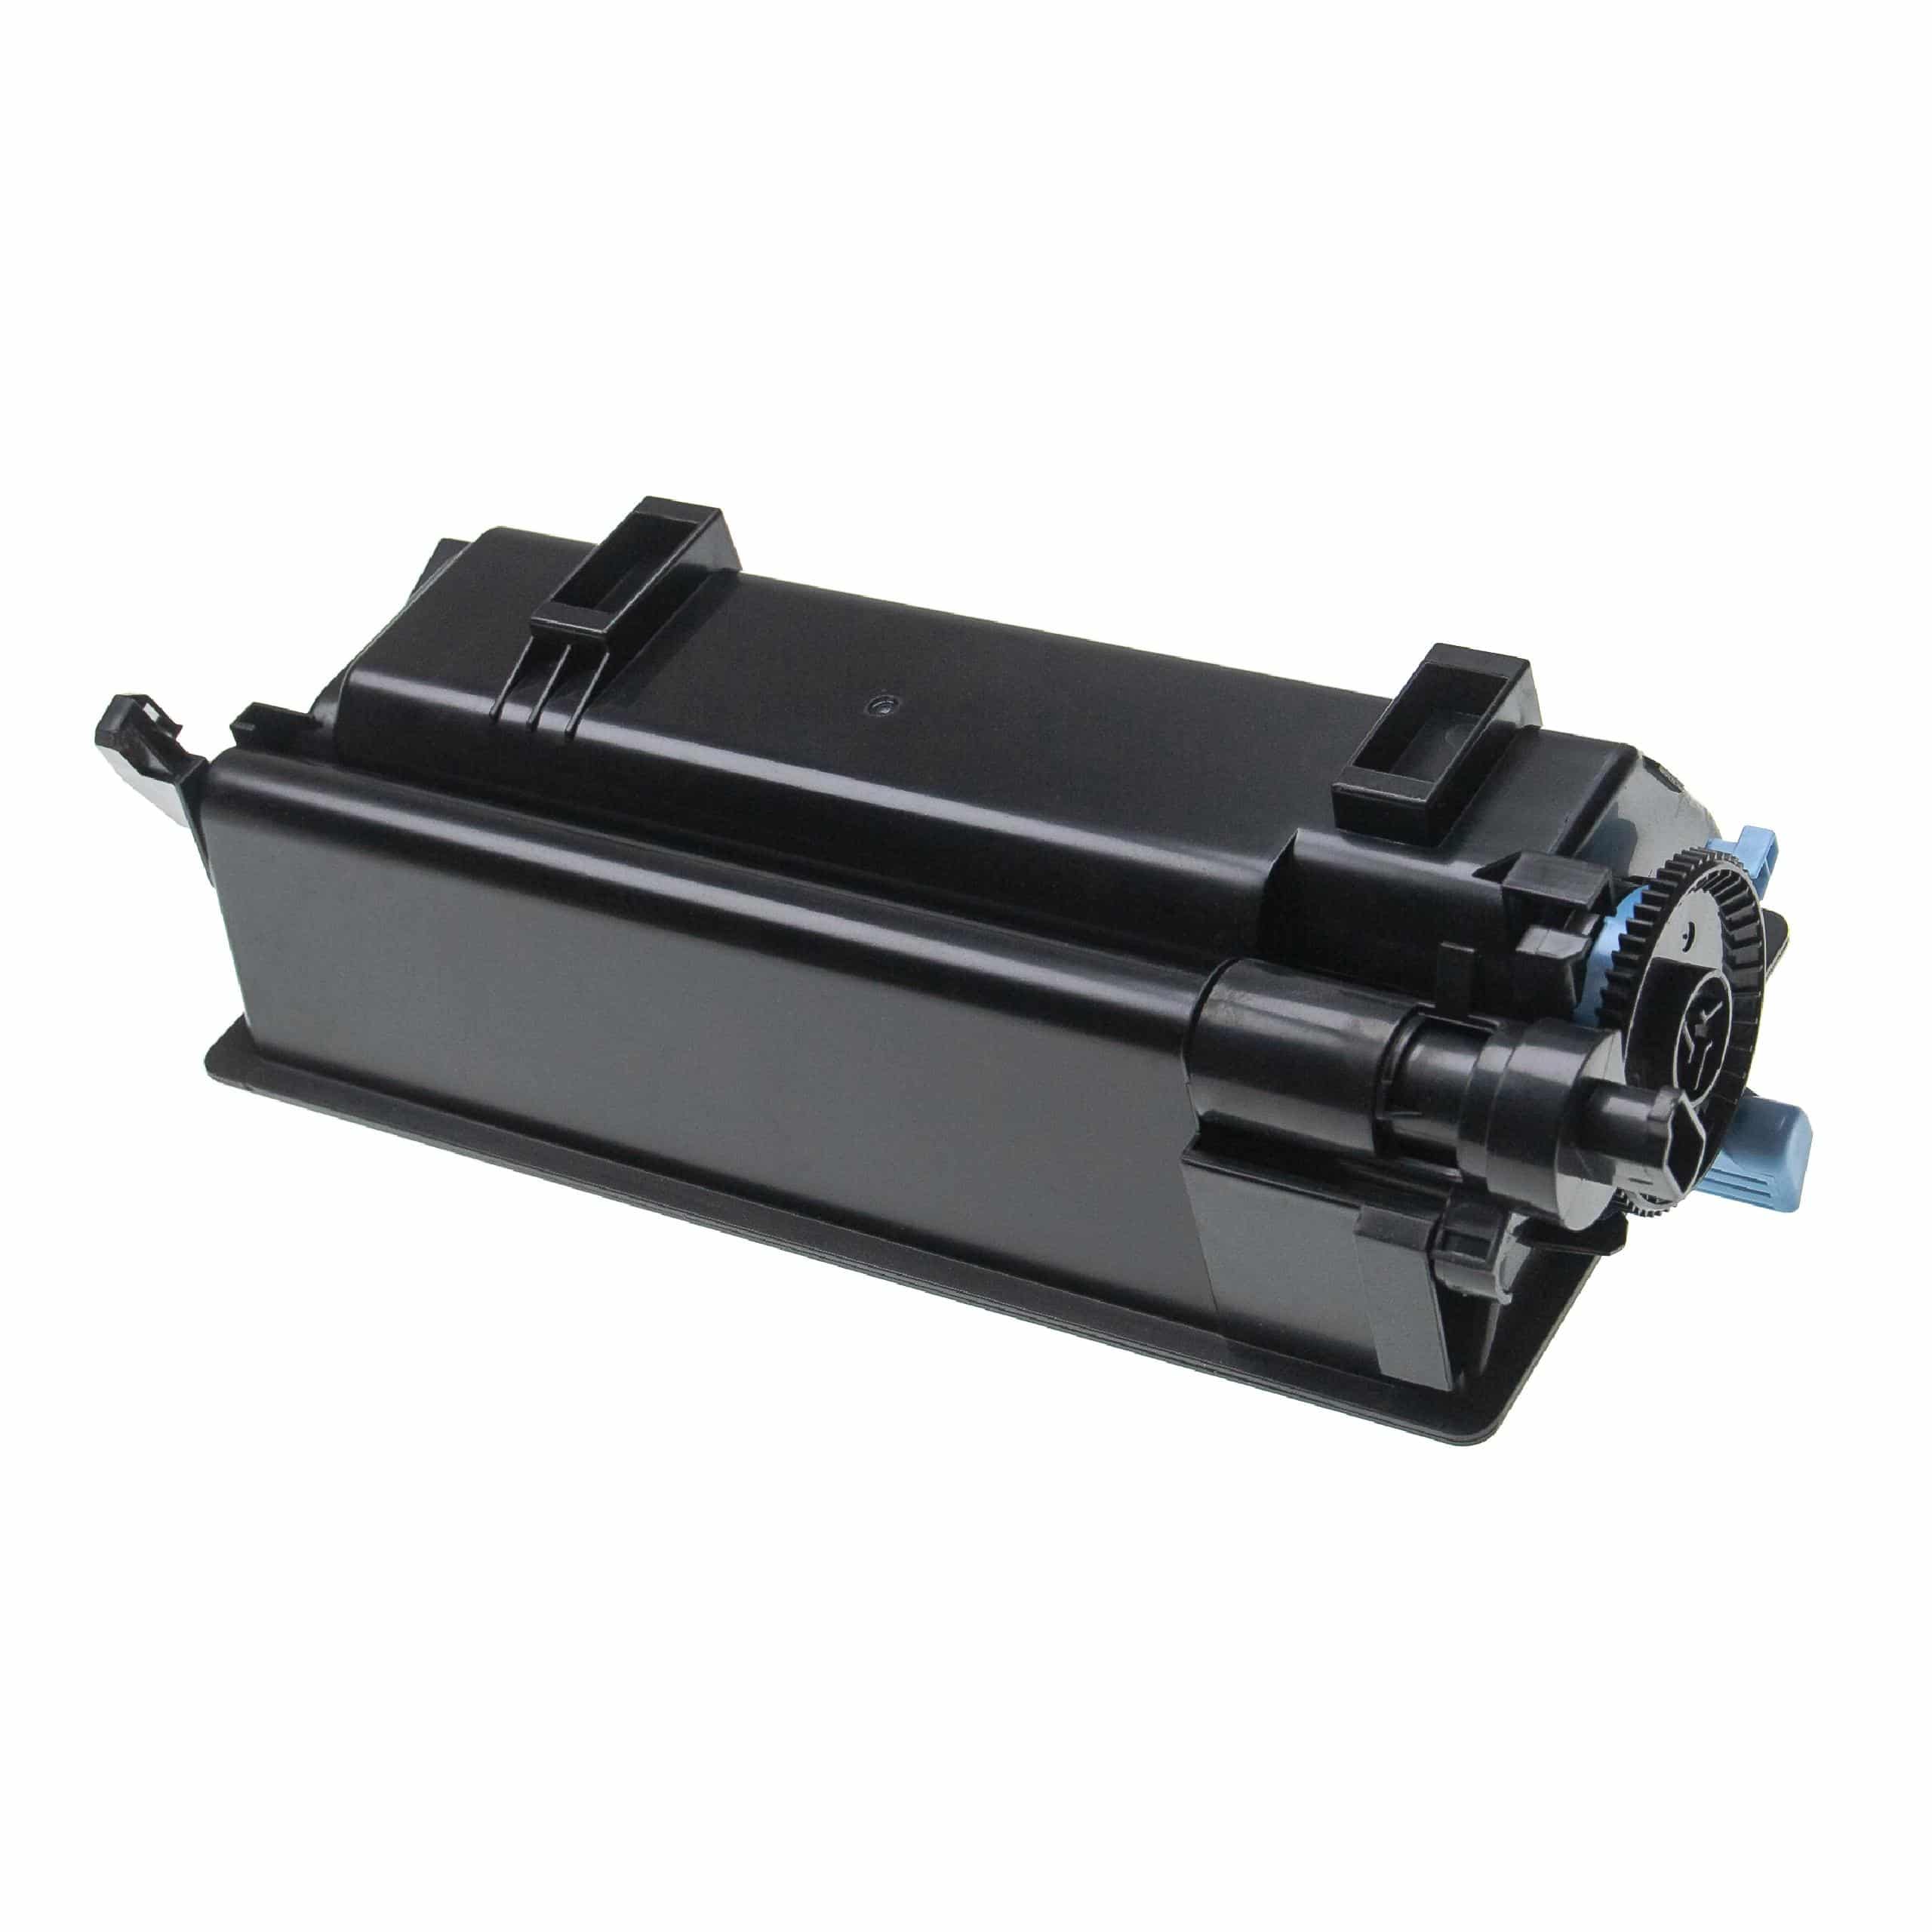 5x Toner als Ersatz für Kyocera TK-3160 für Kyocera Drucker + Resttonerbehälter, Schwarz